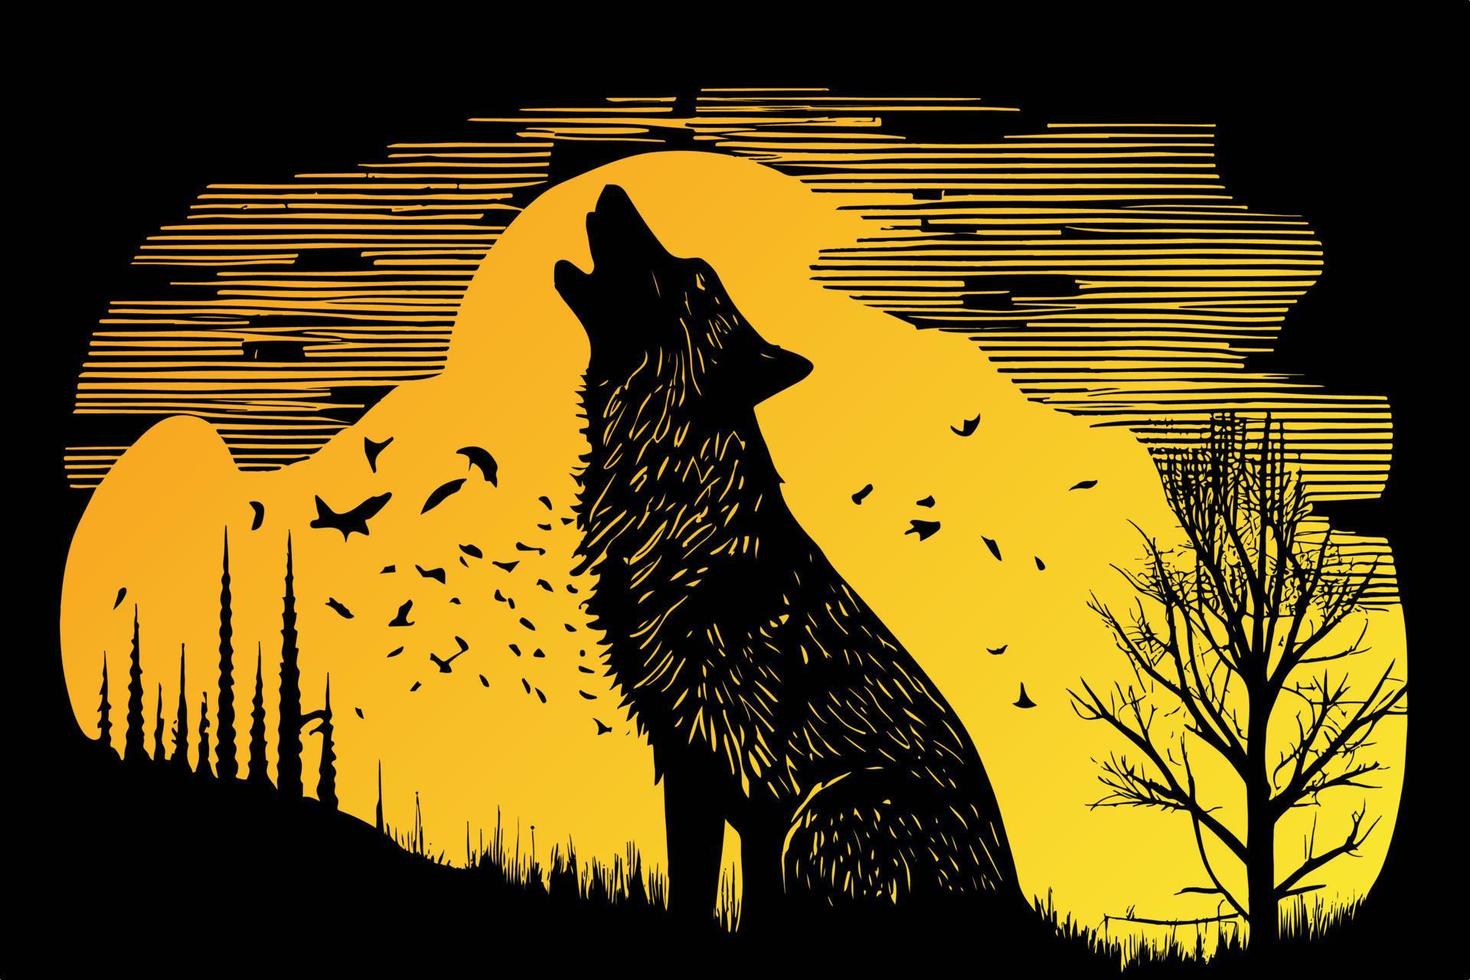 clamoroso lobo ilustración típicamente representa un lobo con sus cabeza inclinado arriba hacia el luna, emitiendo un obsesionante y poderoso aullido. eso simboliza fortaleza, lealtad, y desenfreno vector